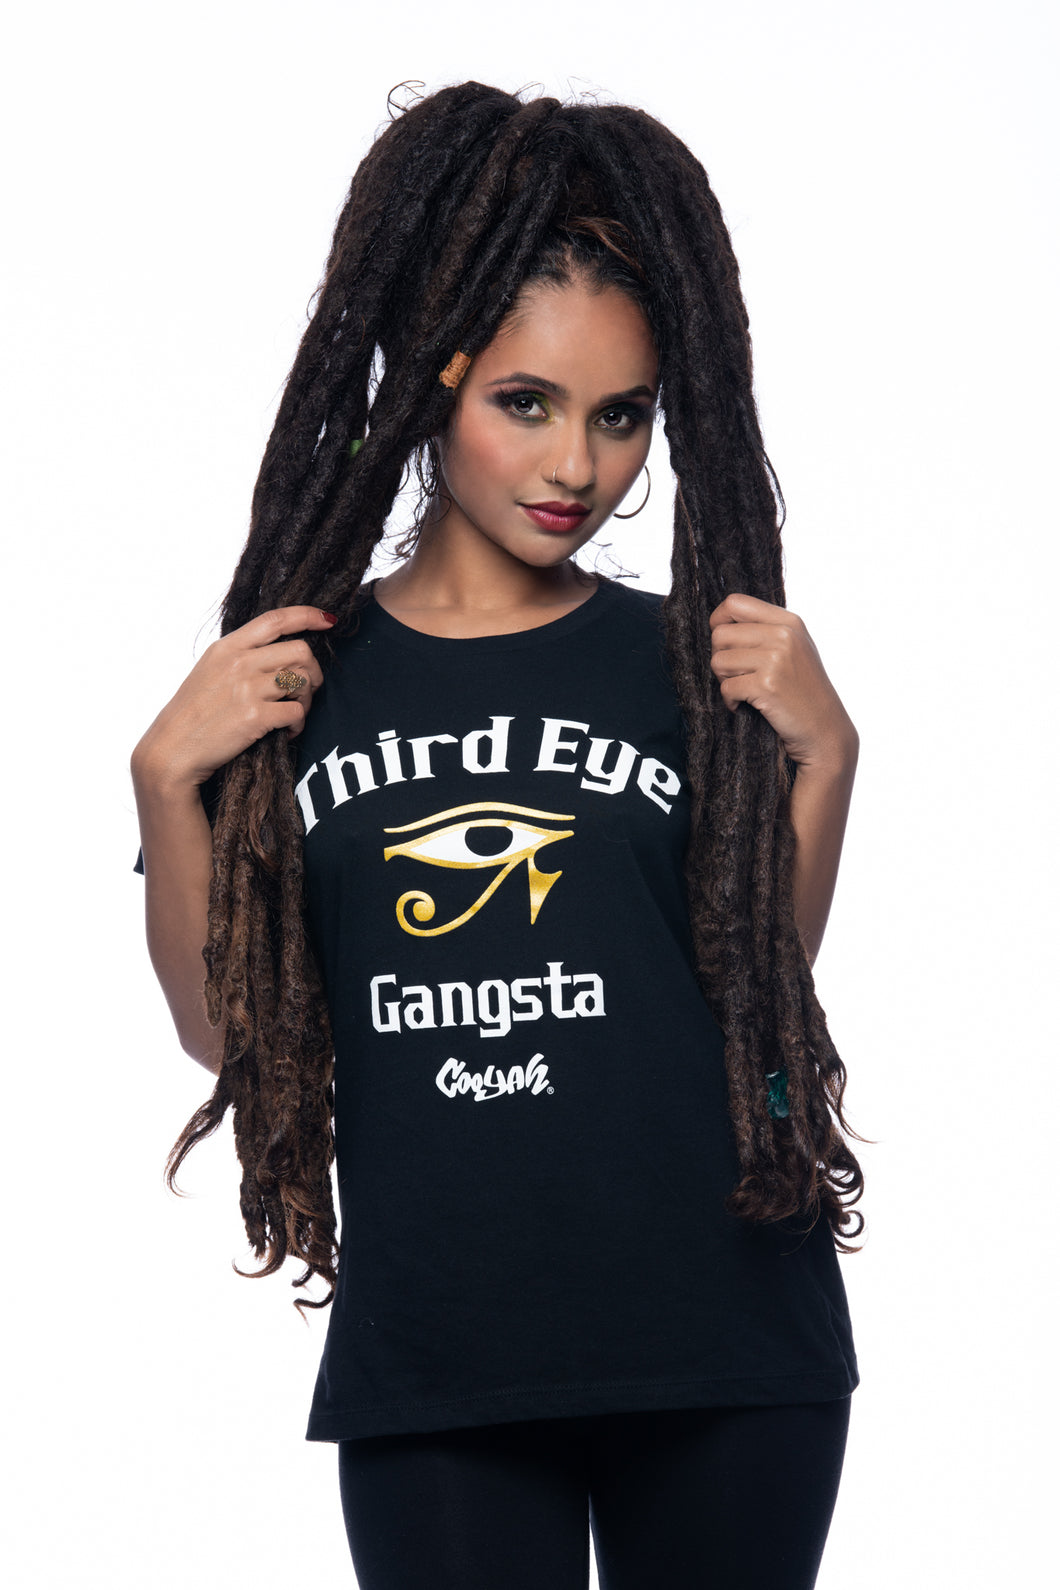 Women’s Third Eye Gangsta T-Shirt